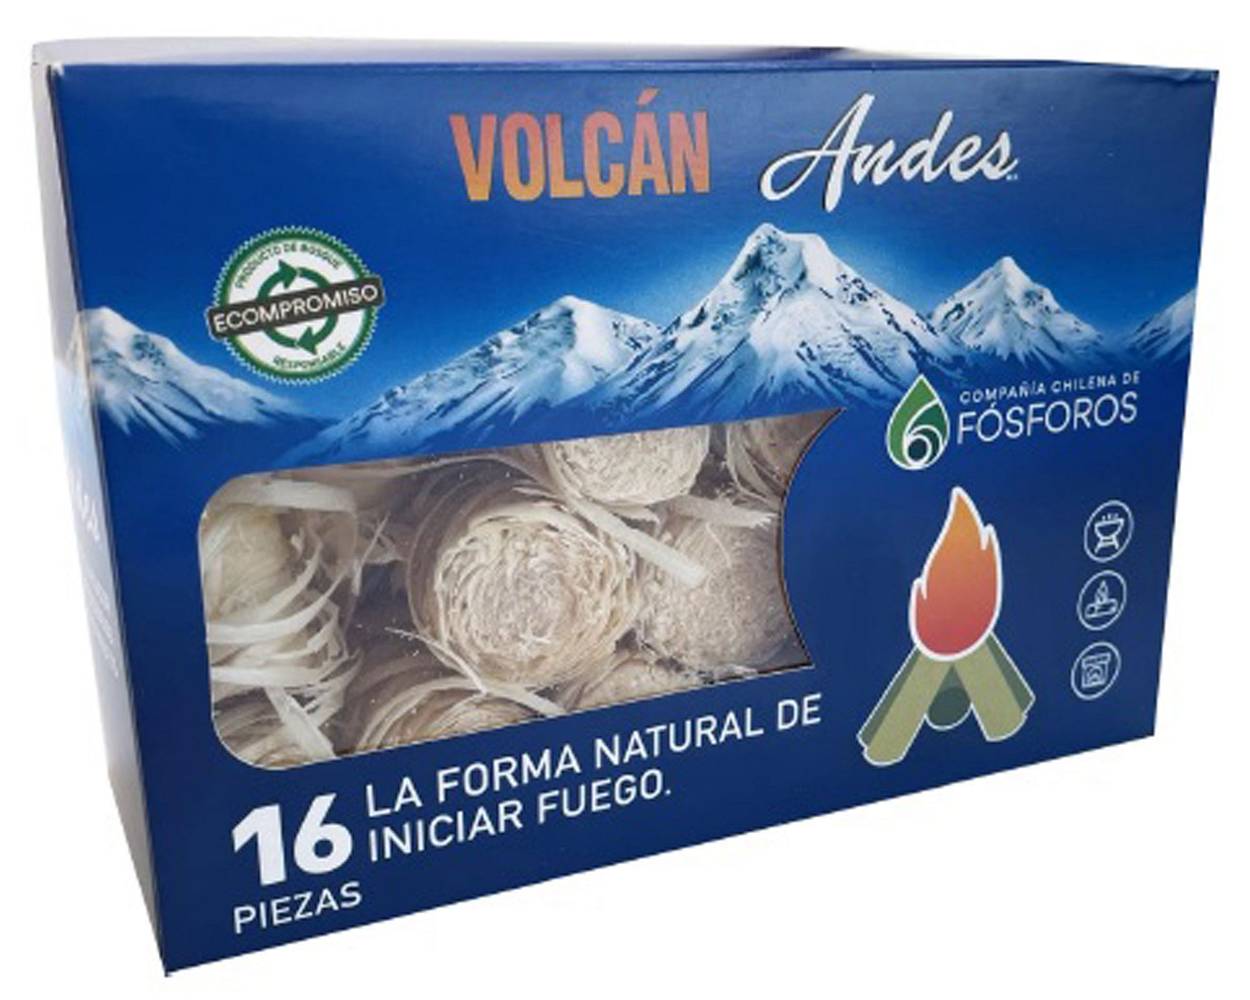 Andes hogar iniciador de fuego volcán (16 u)